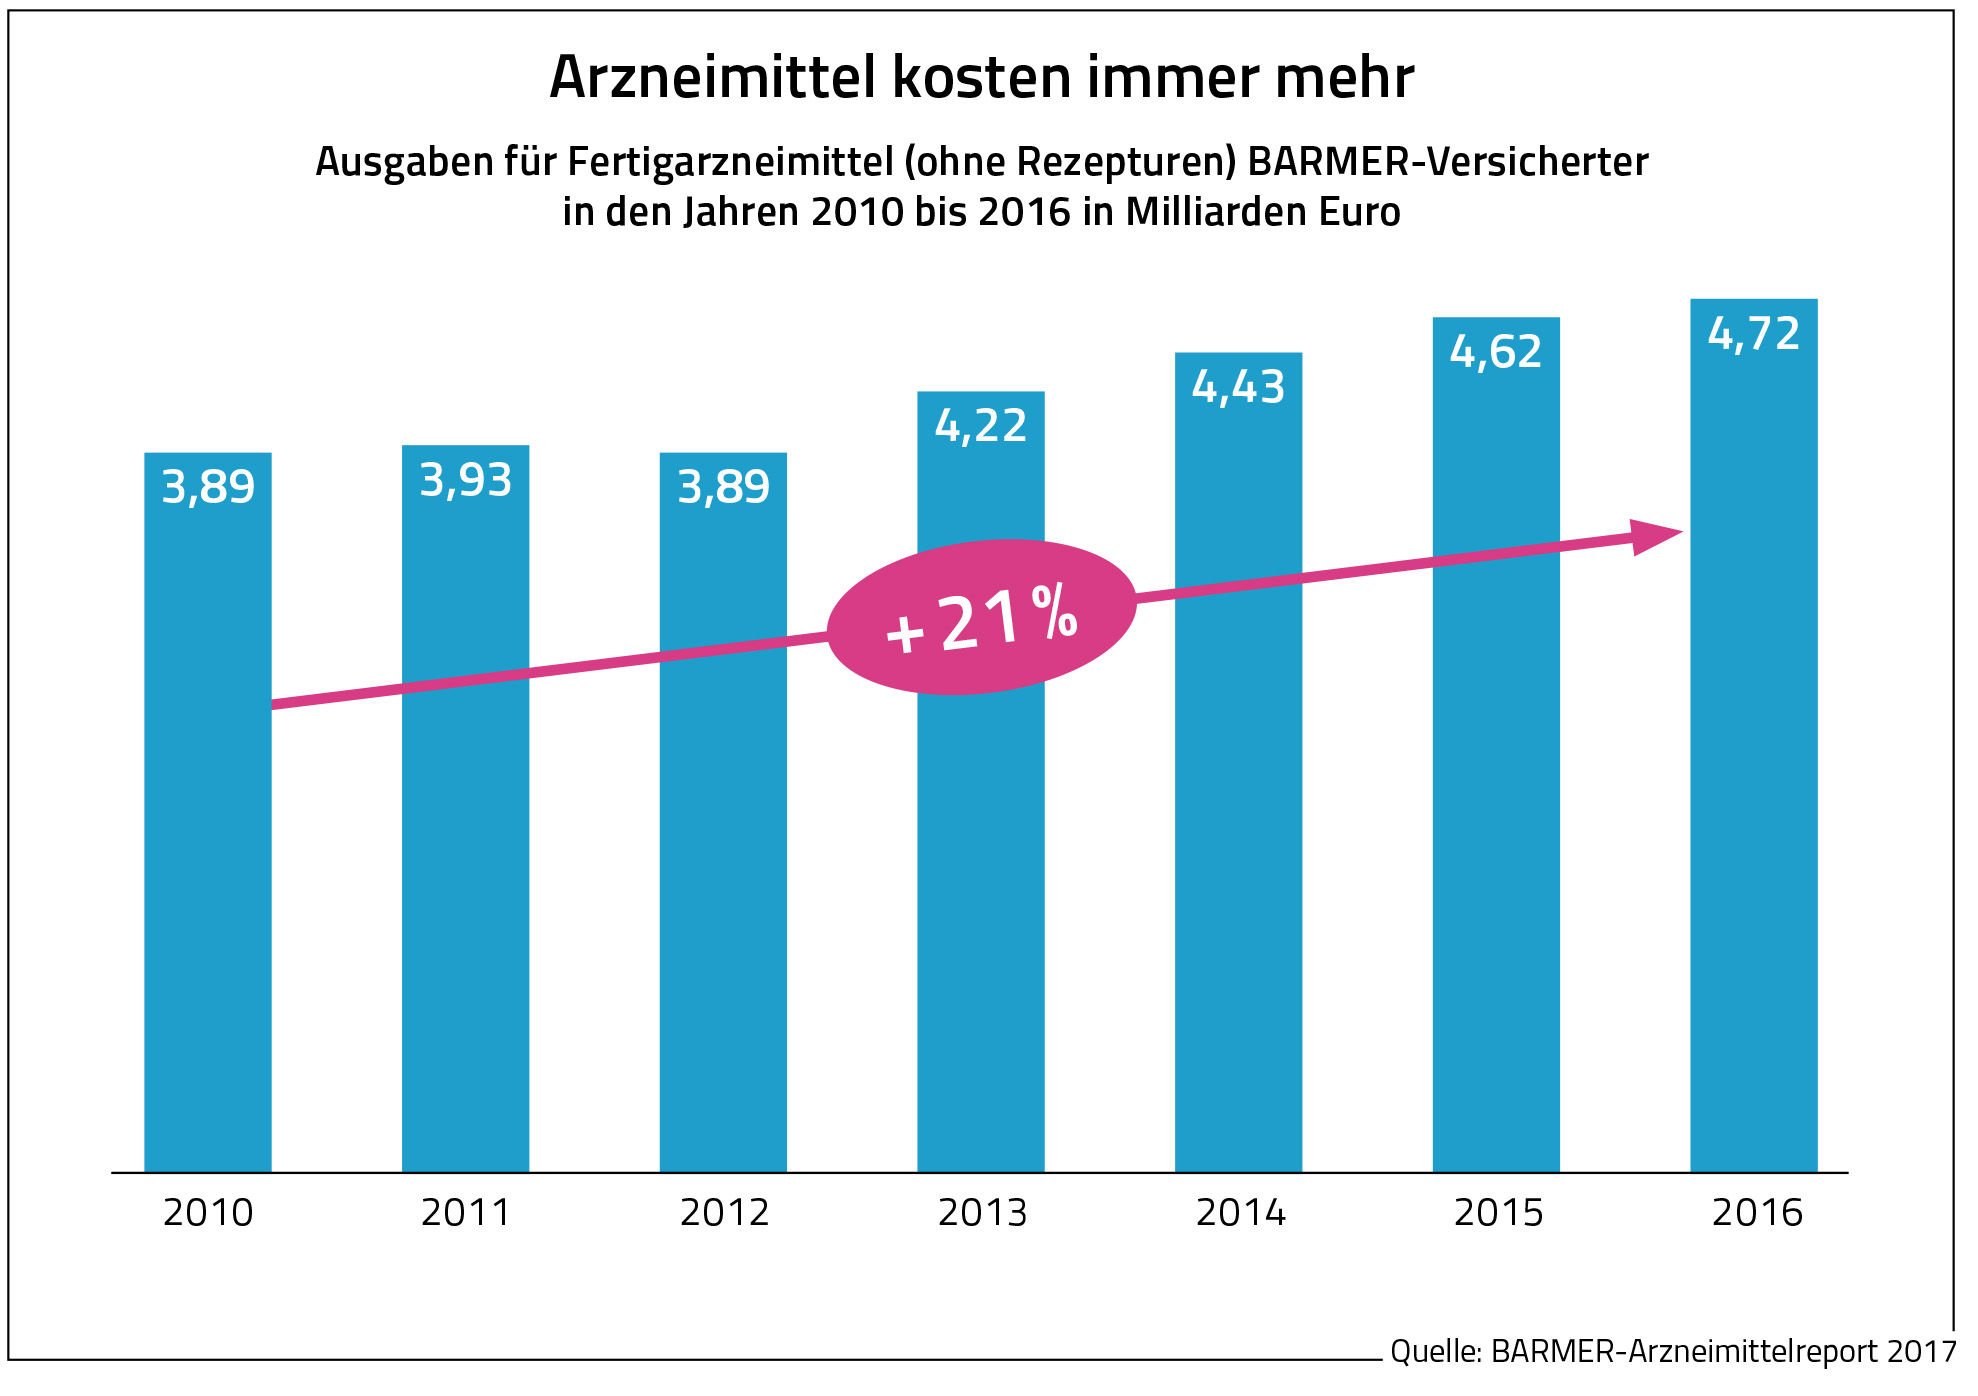 Die Grafik zeigt die Ausgaben für Fertigarzneimittel (ohne Rezepturen) Barmer-Versicherter in den Jahren 2010 bis 2016